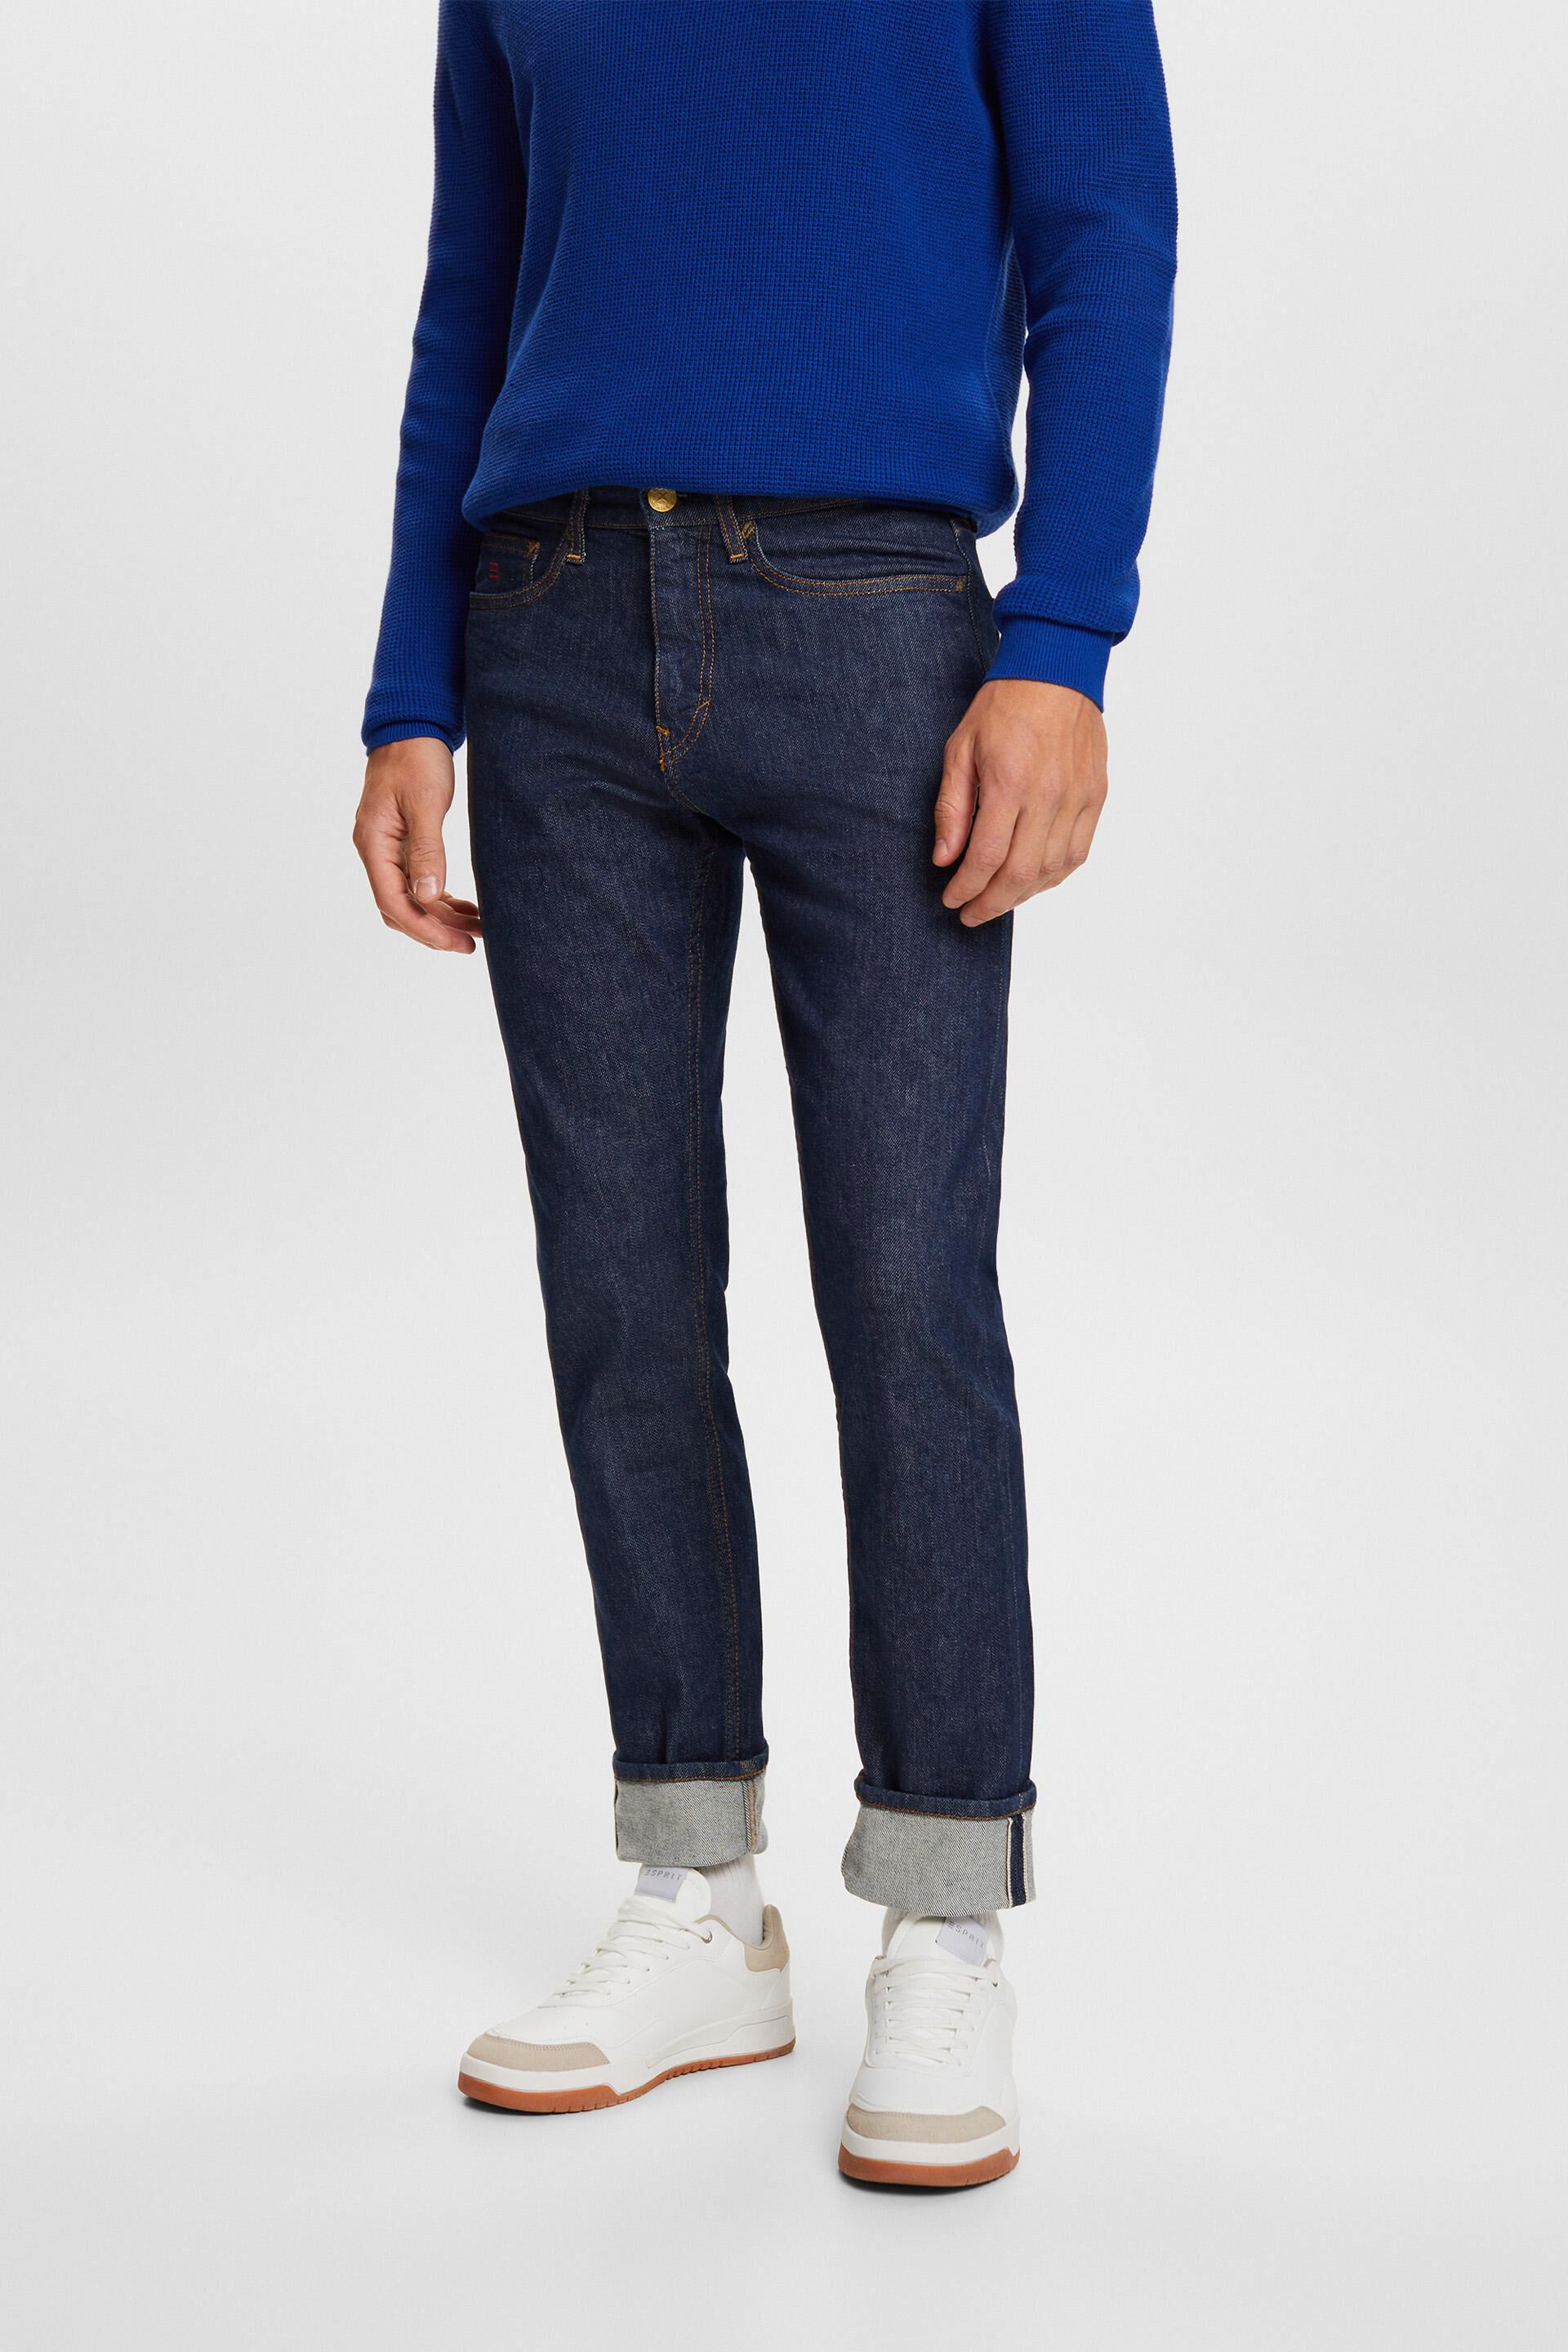 Esprit fit slim Premium jeans with selvedge